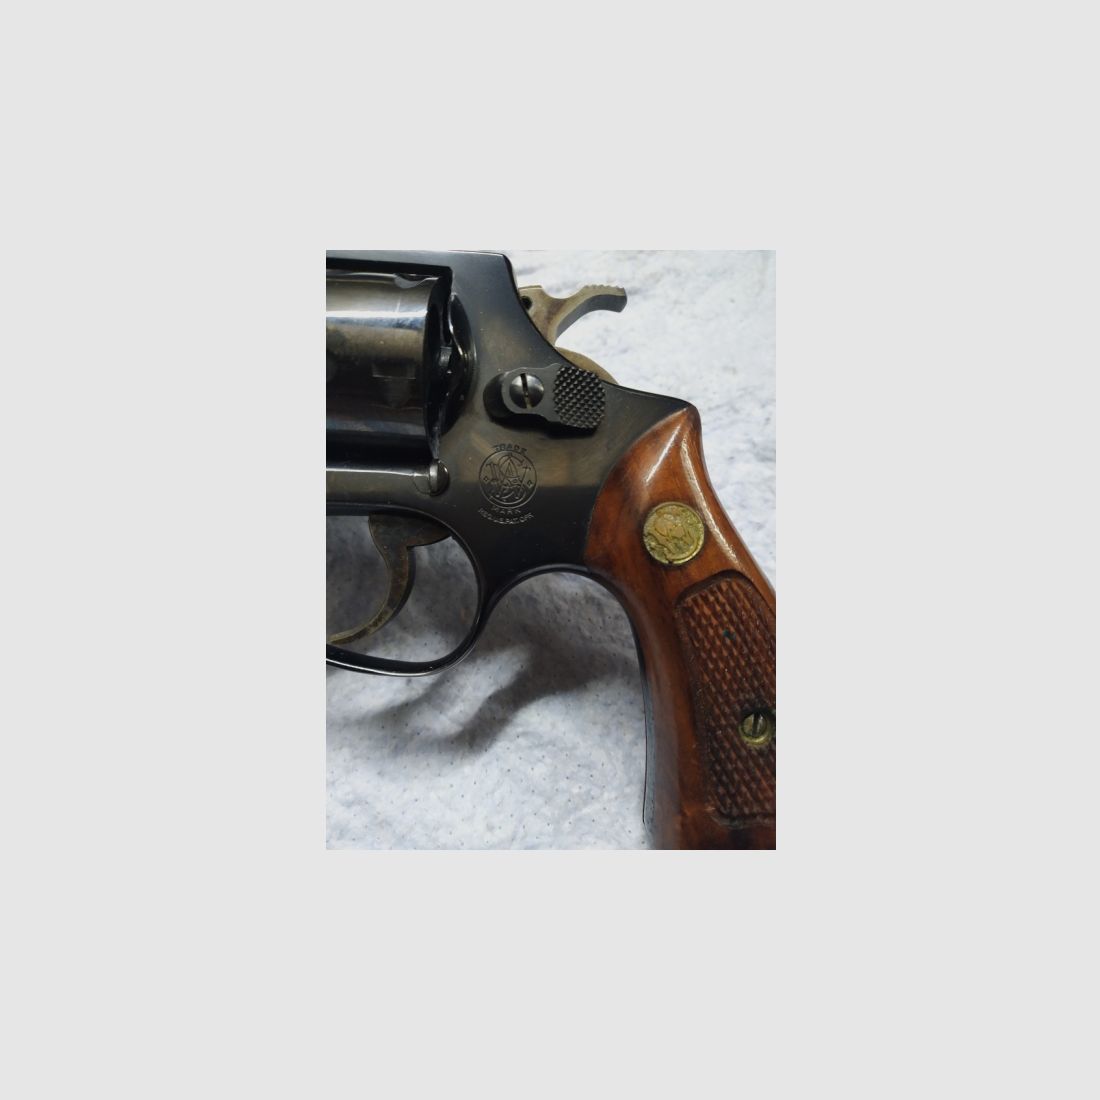 Revolver Smith&Wesson Mod. 36, 2" Lauf